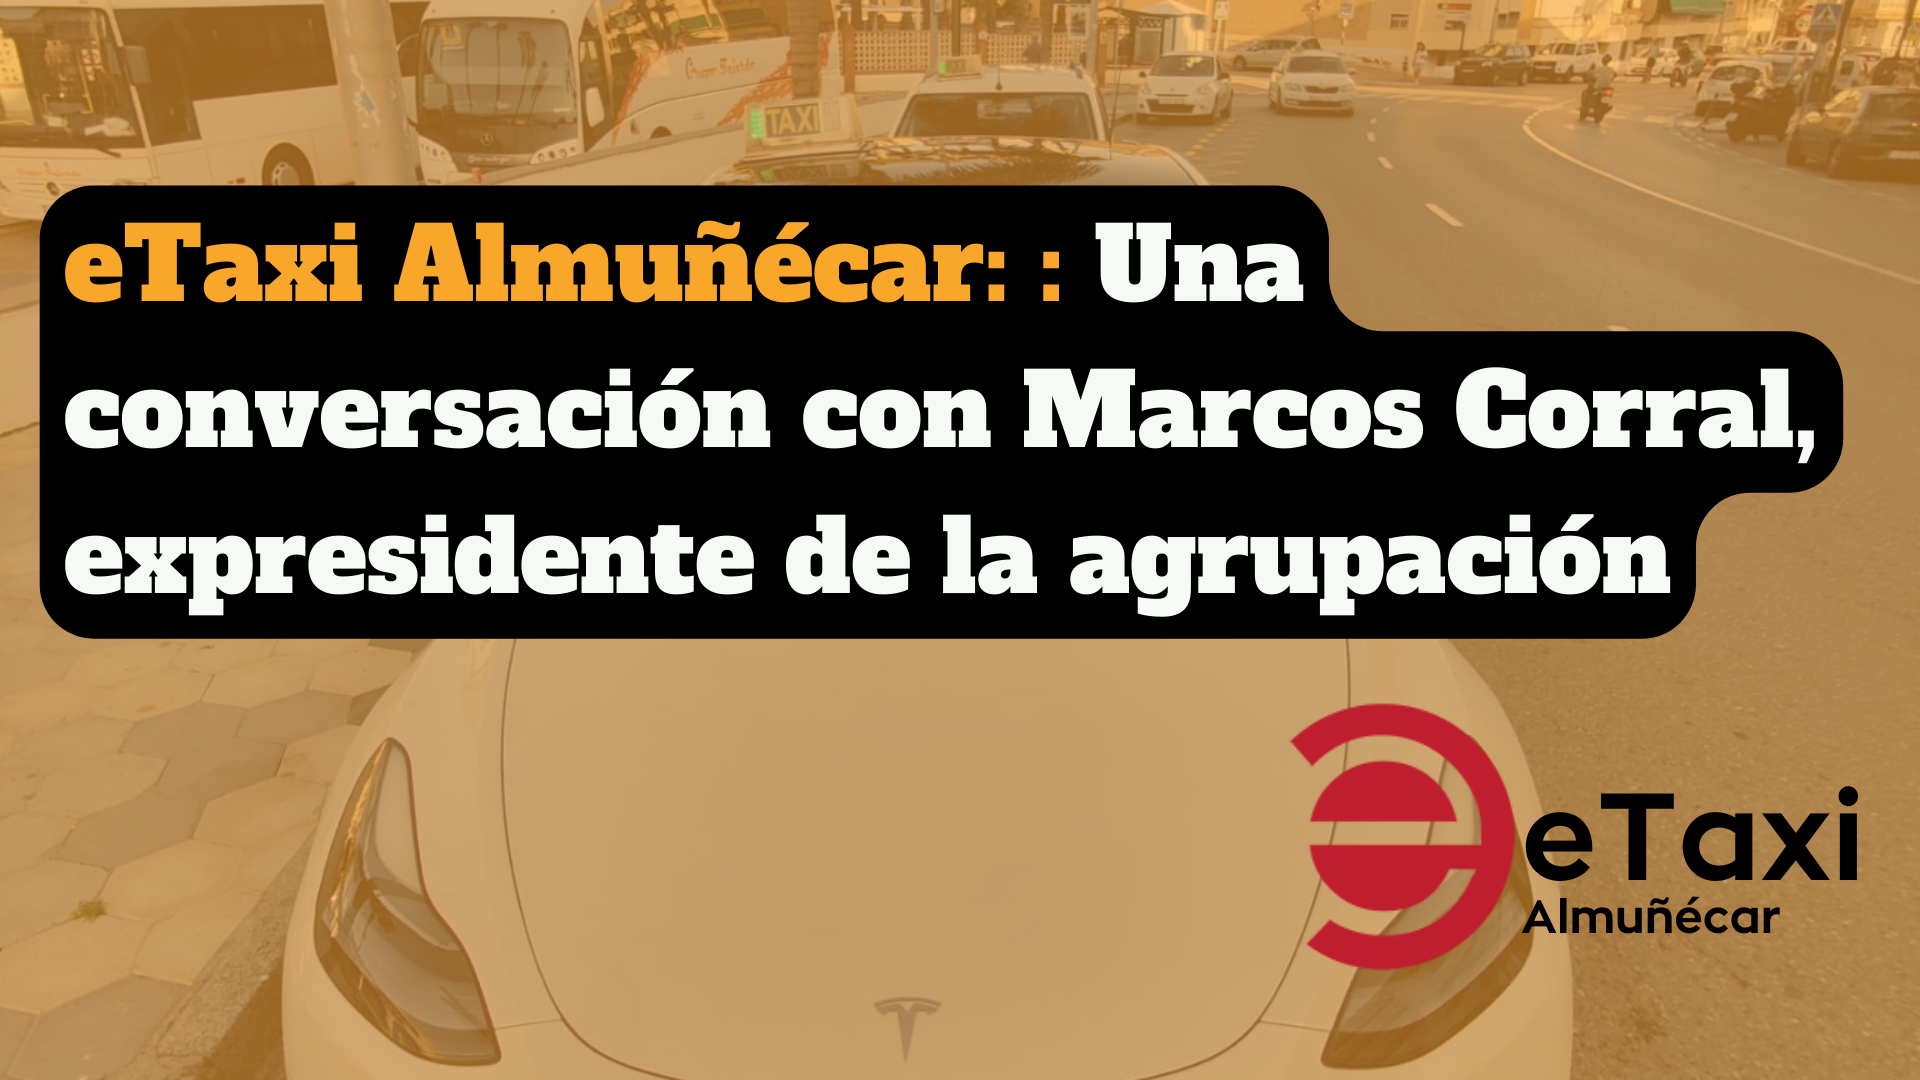 eTaxi Almuñécar: Una conversación con Marcos Corral, taxista y responsable de la flota